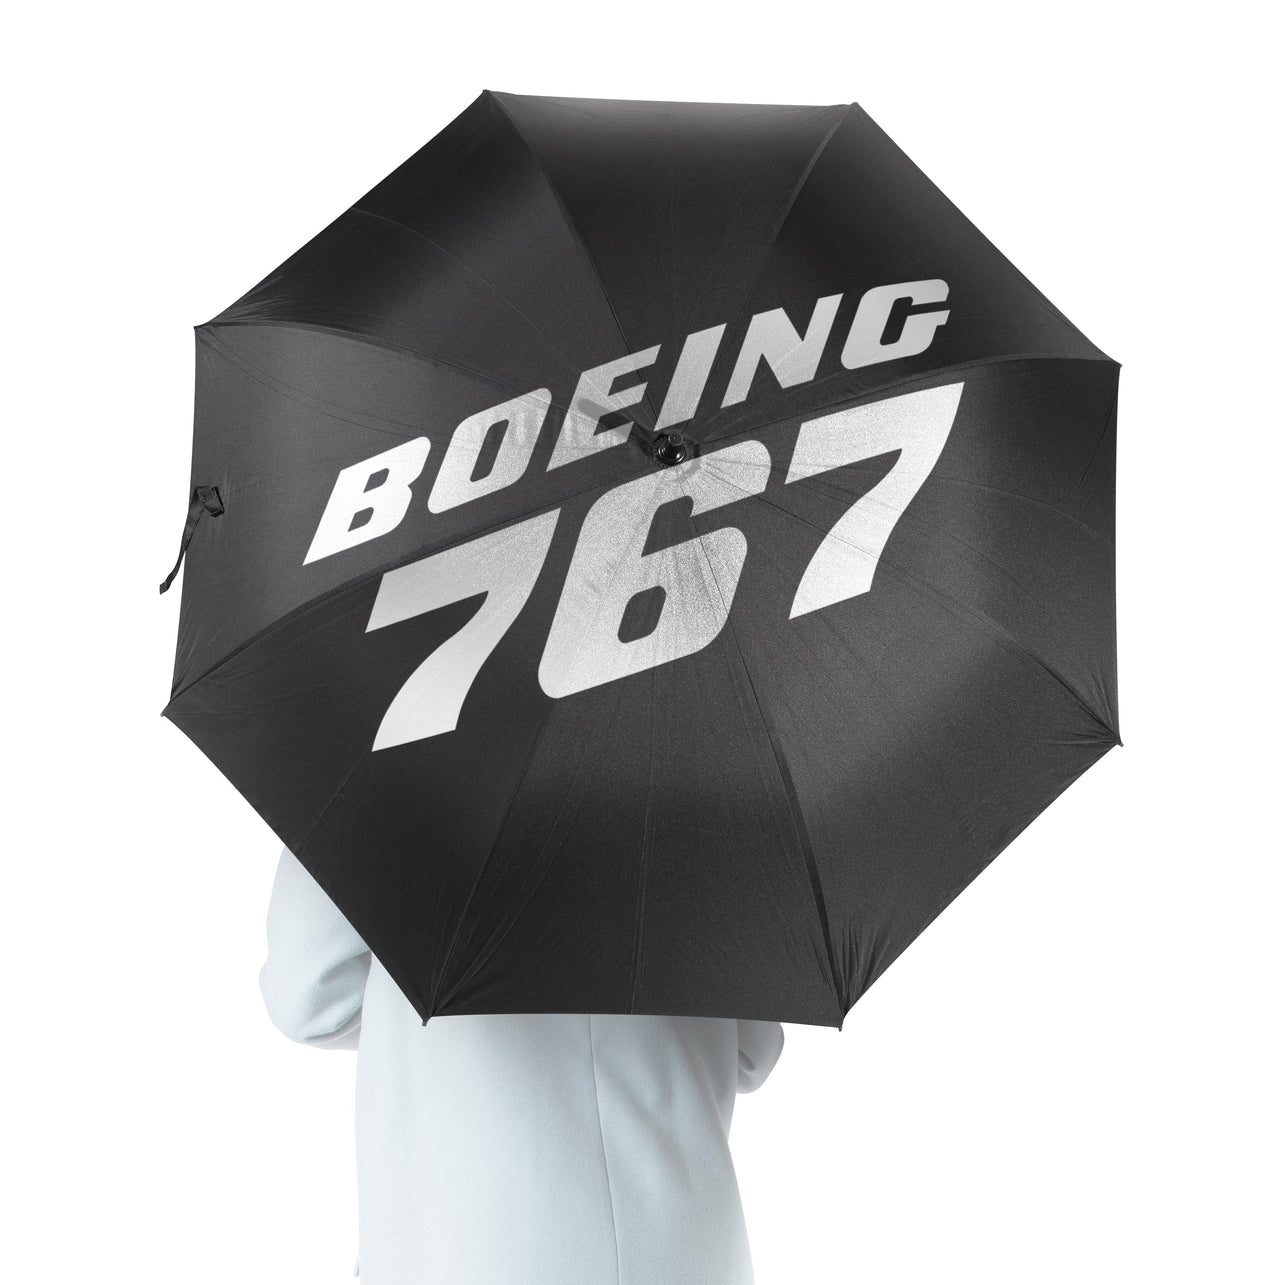 Boeing 767 & Text Designed Umbrella